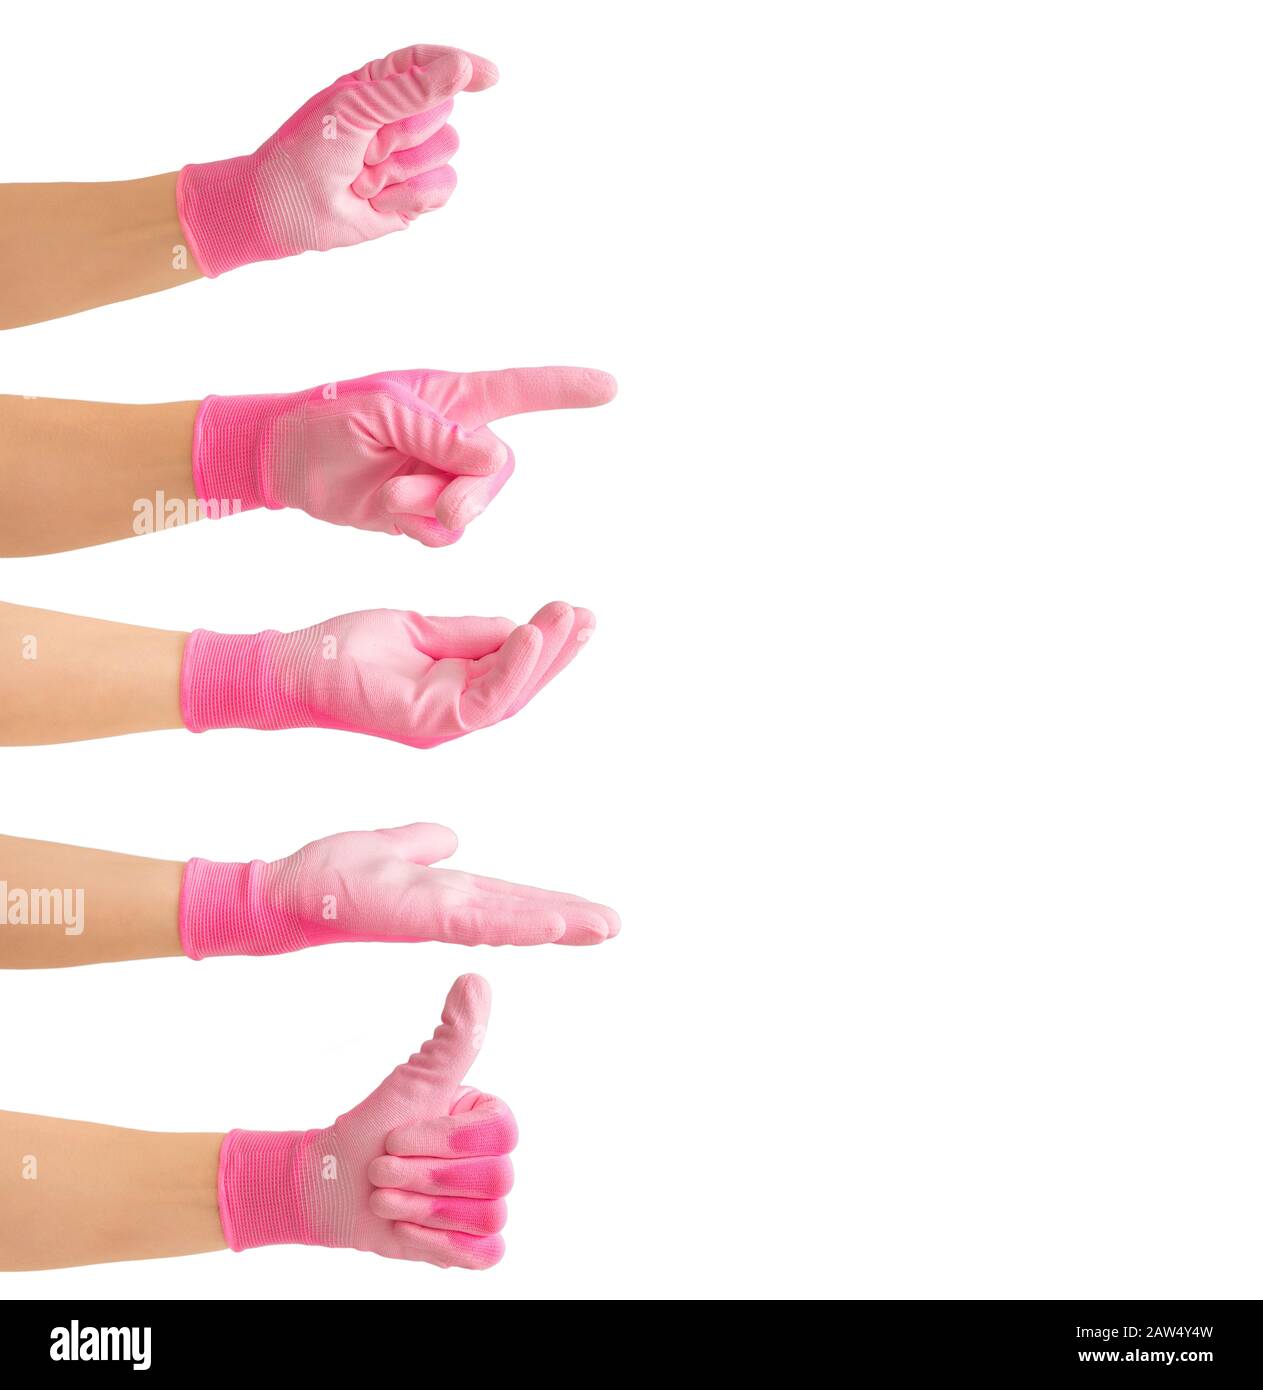 Beaucoup de différentes formes de gestes de la main de femme avec le gant de travail rose. Pouces vers le haut, OK, tenir, pointage de doigt, à l'intérieur de la paume et sur la paume. Contexte publicitaire c Banque D'Images